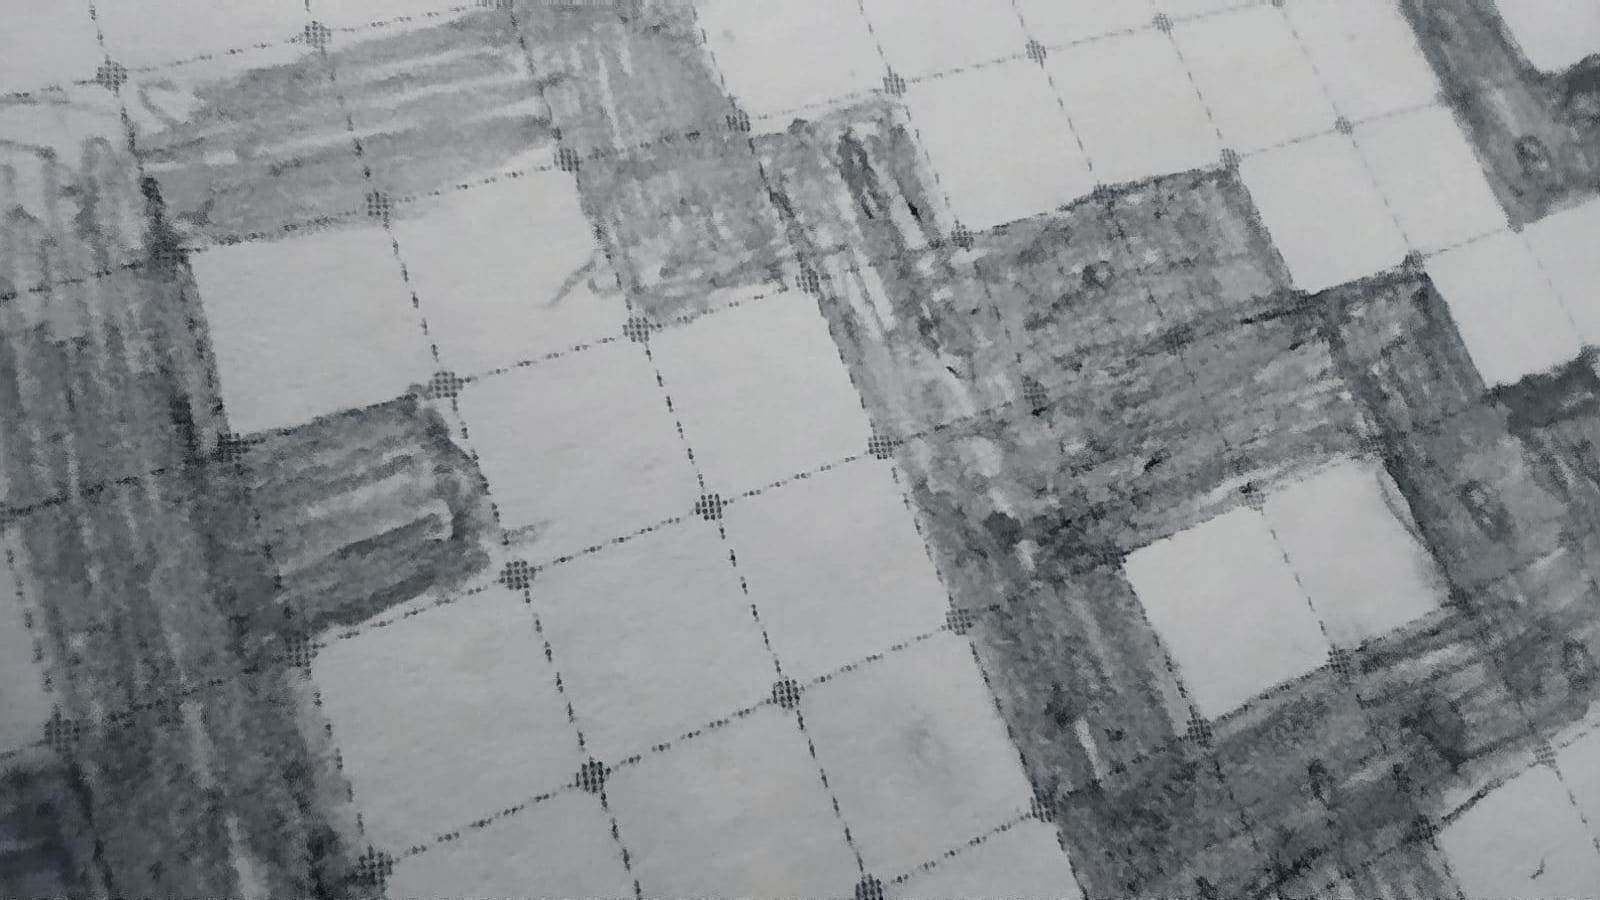 Das Bild zeigt einen Detailauschnitt des Entwurfs, welcher mit Bleistift auf kariertem Papier gezeichnet wurde. Ein Kästchen stellt ein Pixel dar.